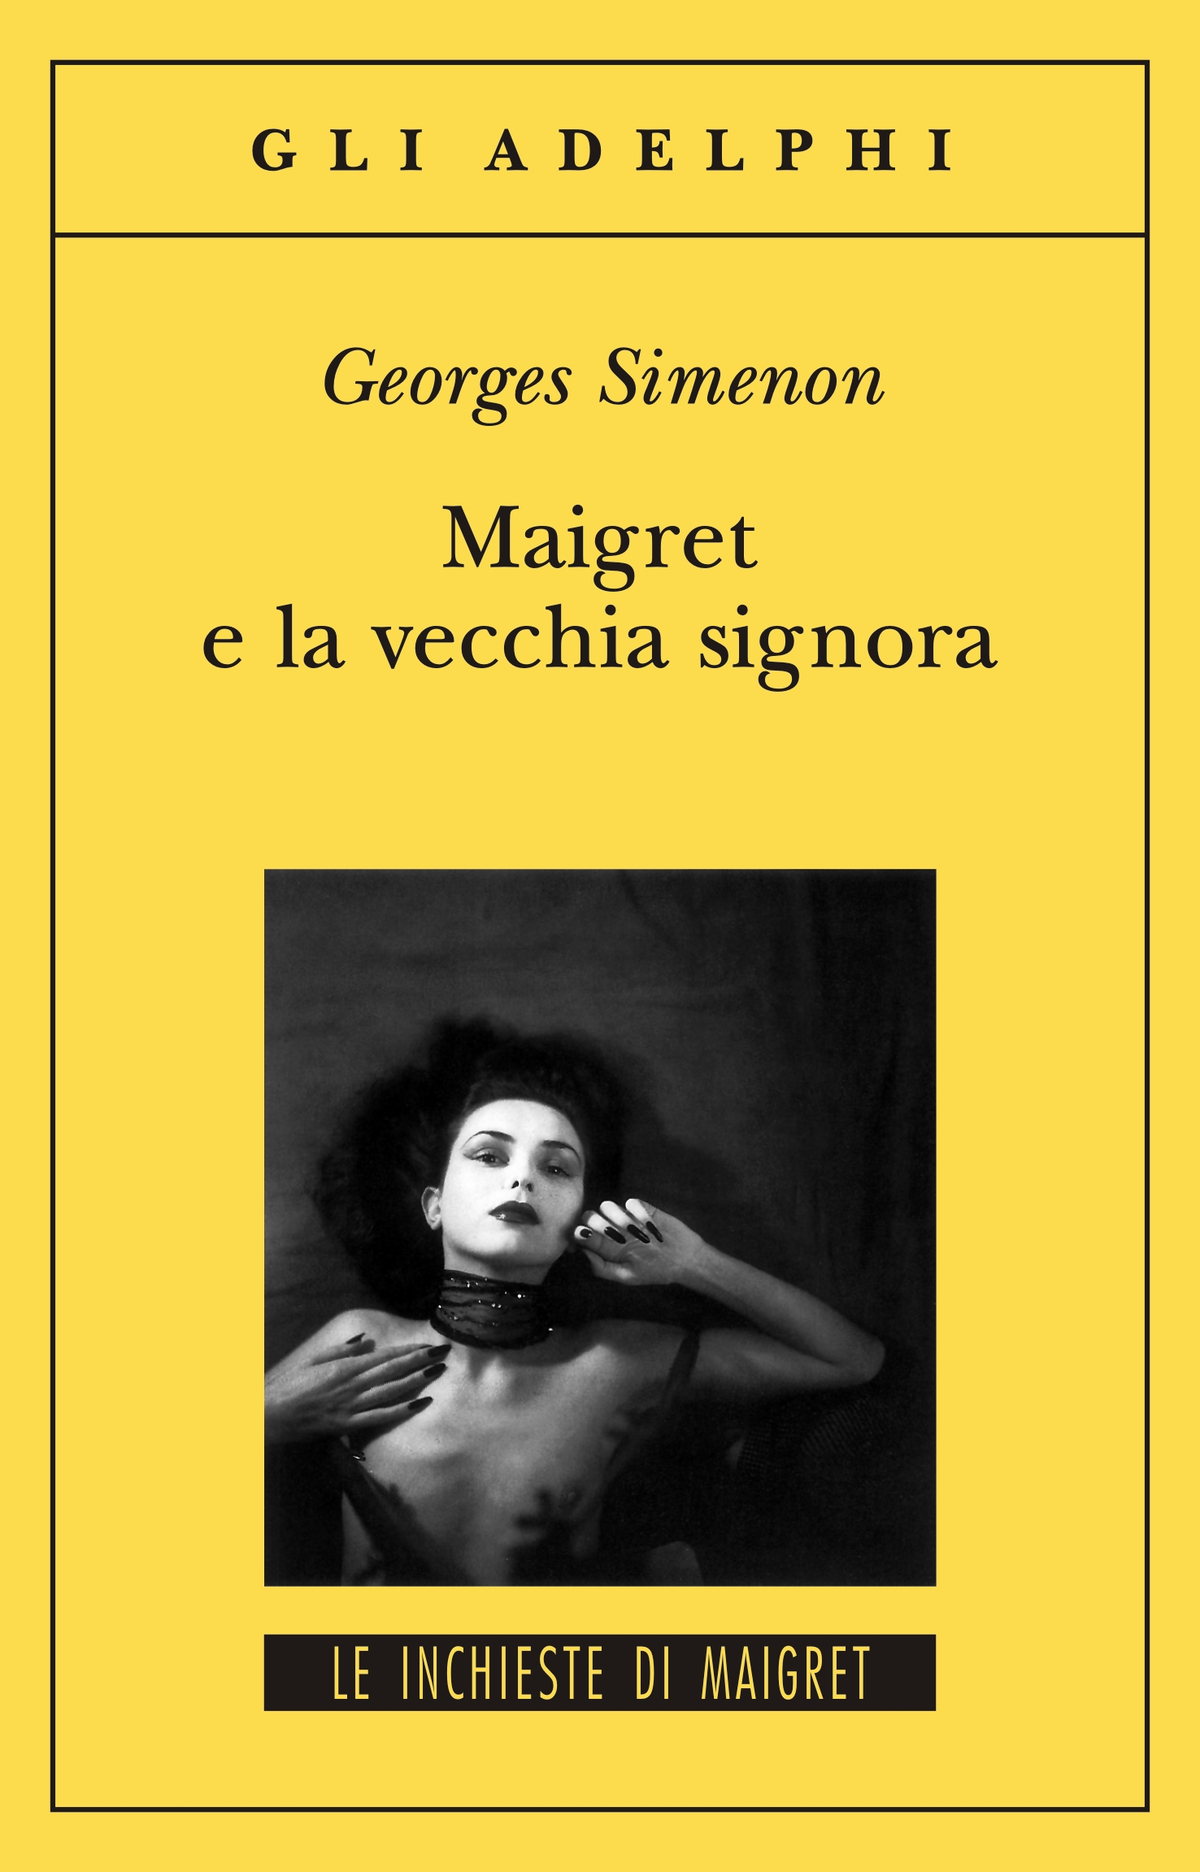 Adelphi 2004 Georges Simenon MAIGRET E LA VECCHIA SIGNORA 